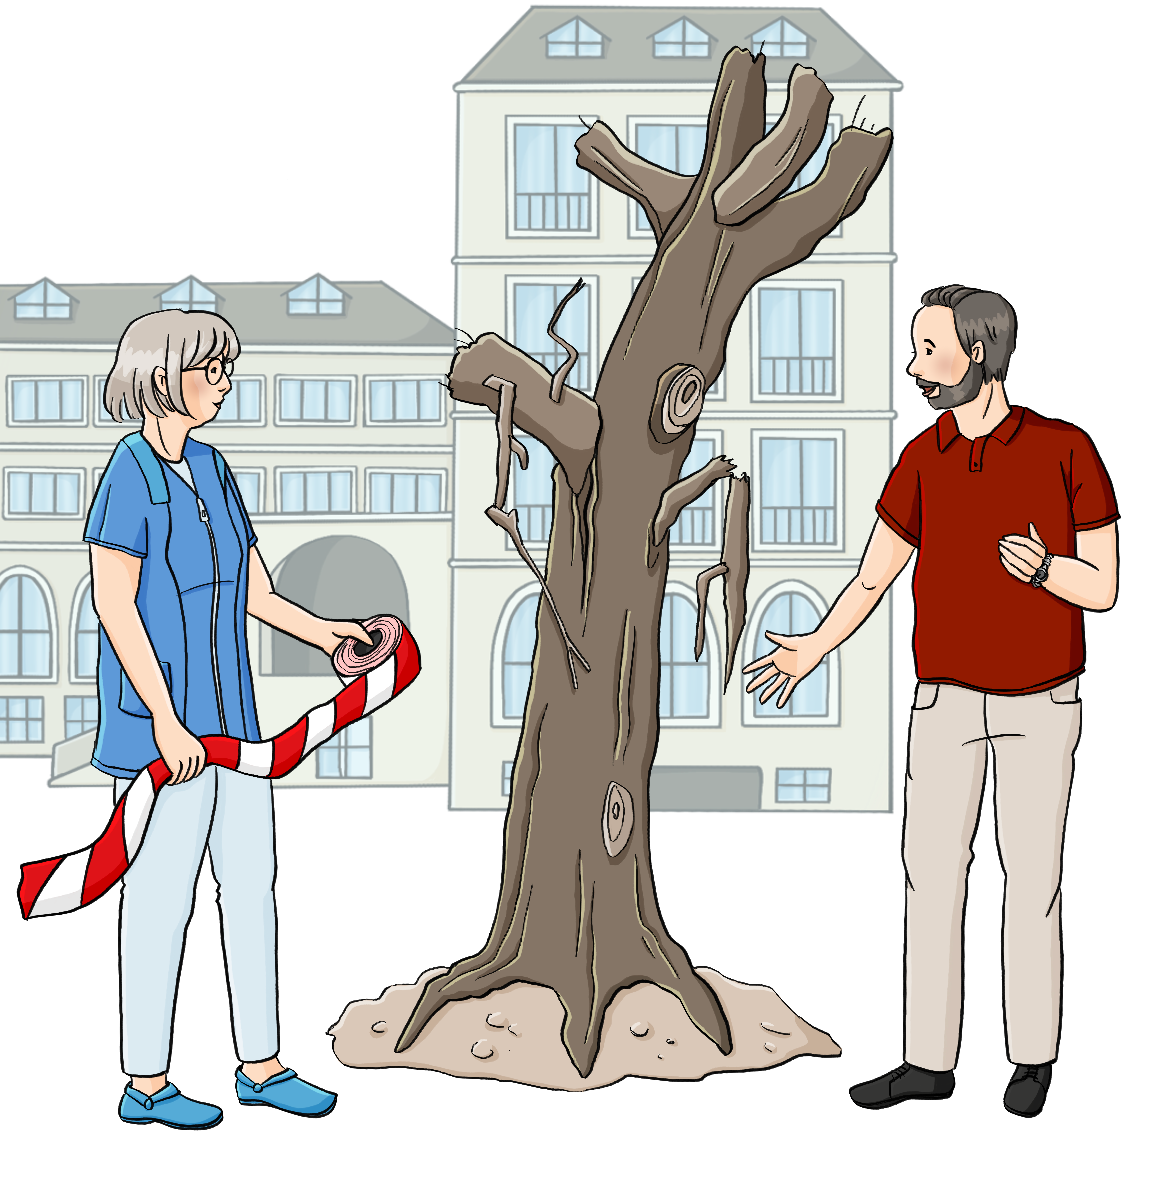 Ein Mann und eine Frau stehen neben einem morschen Baum. Der Mann zeigt auf den Baum, die Frau hält eine Rolle Absperrband in der Hand. Im Hintergrund ist ein Schulgebäude.